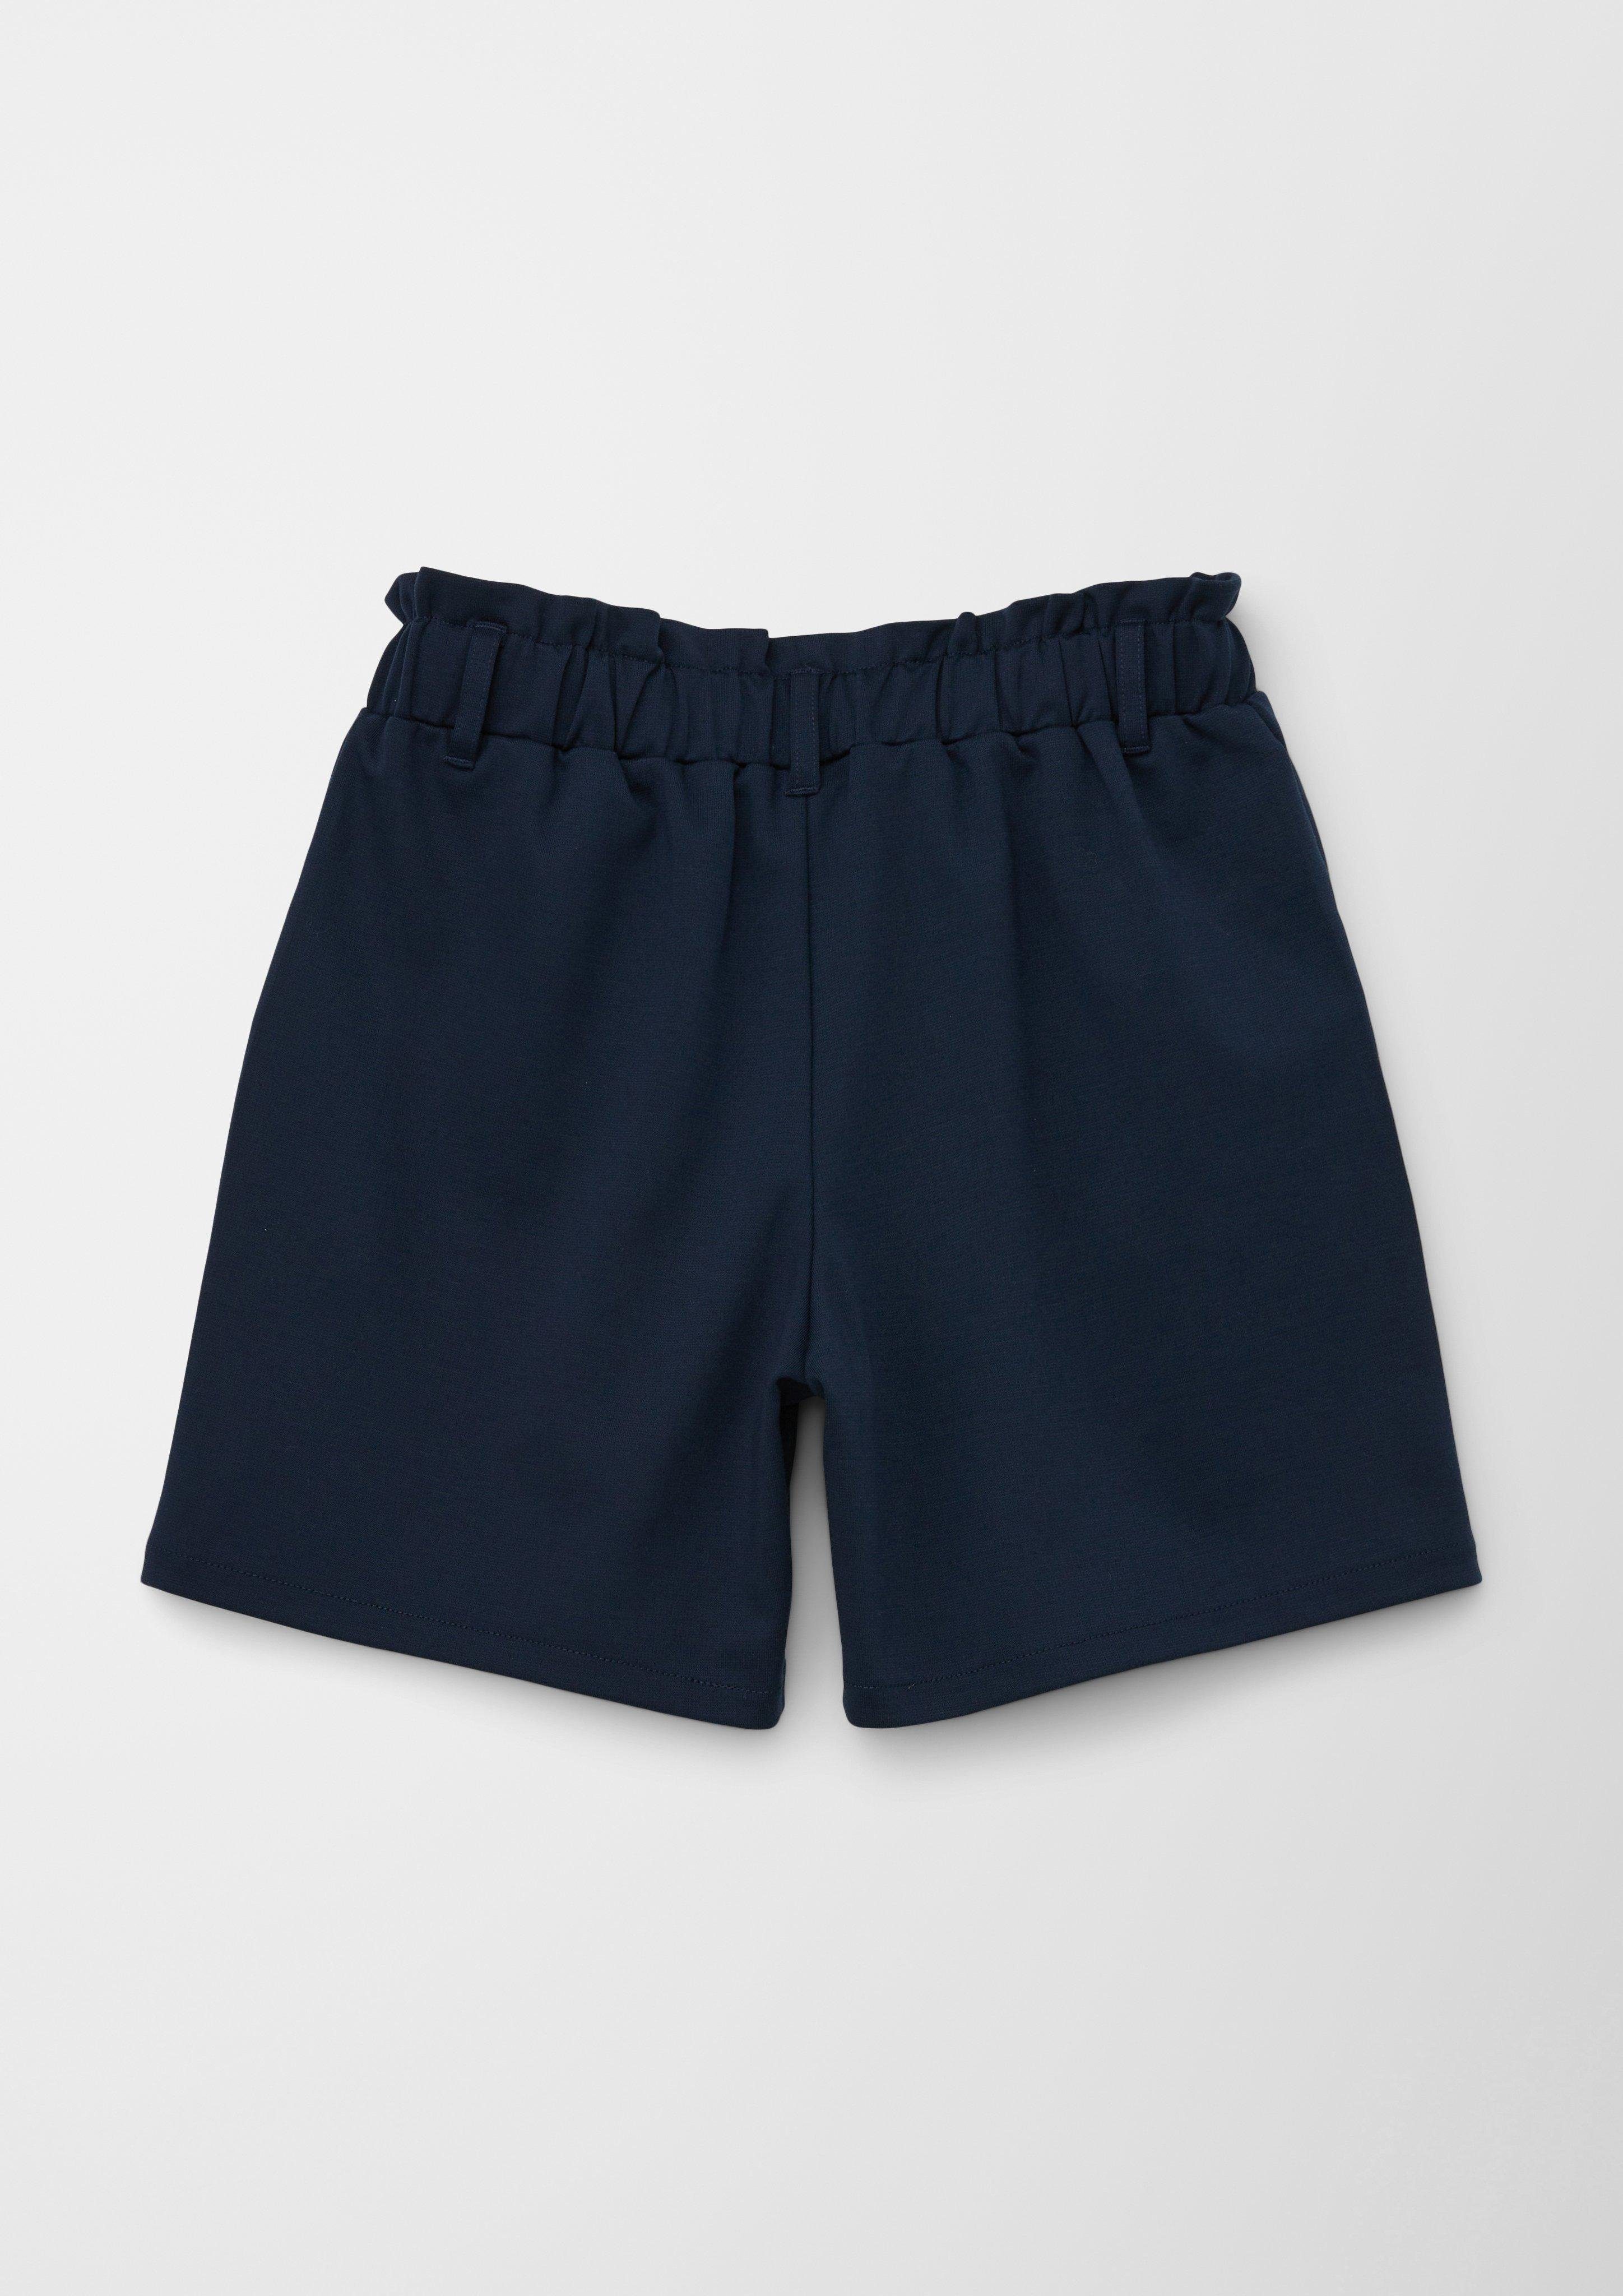 Paperbag-Stil Shorts im navy s.Oliver Leggings